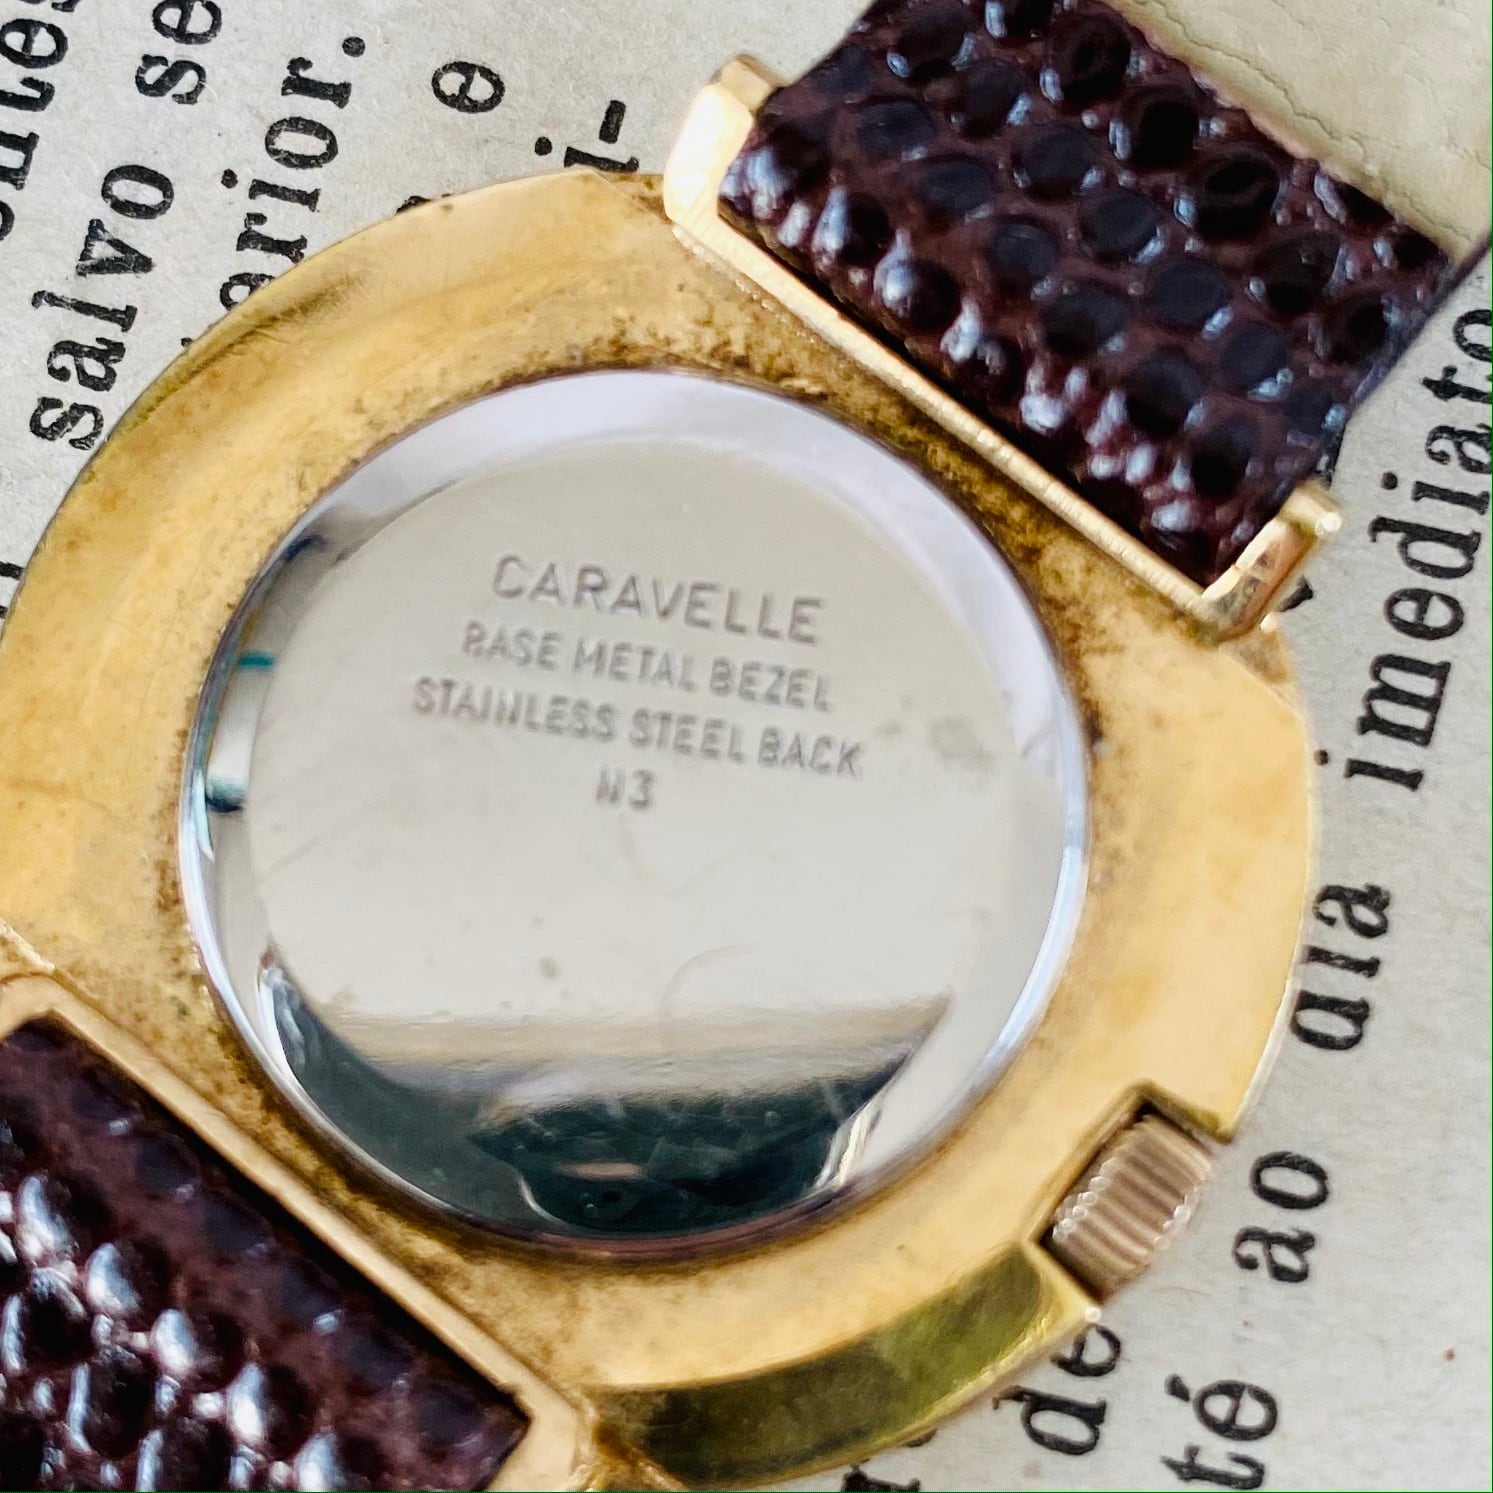 【高級腕時計キャラベル】Caravelle 1970年代 手巻き 17石 スイスレオウォッチ